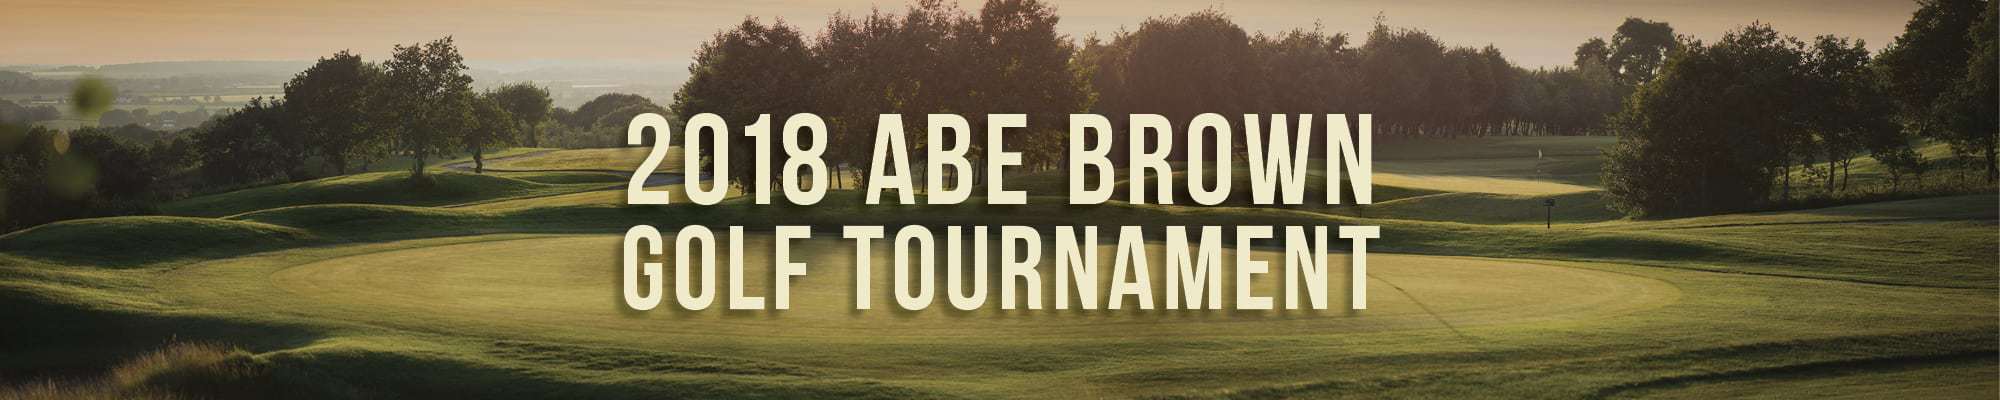 2018-Abe-Brown-Golf-Tournament-Header